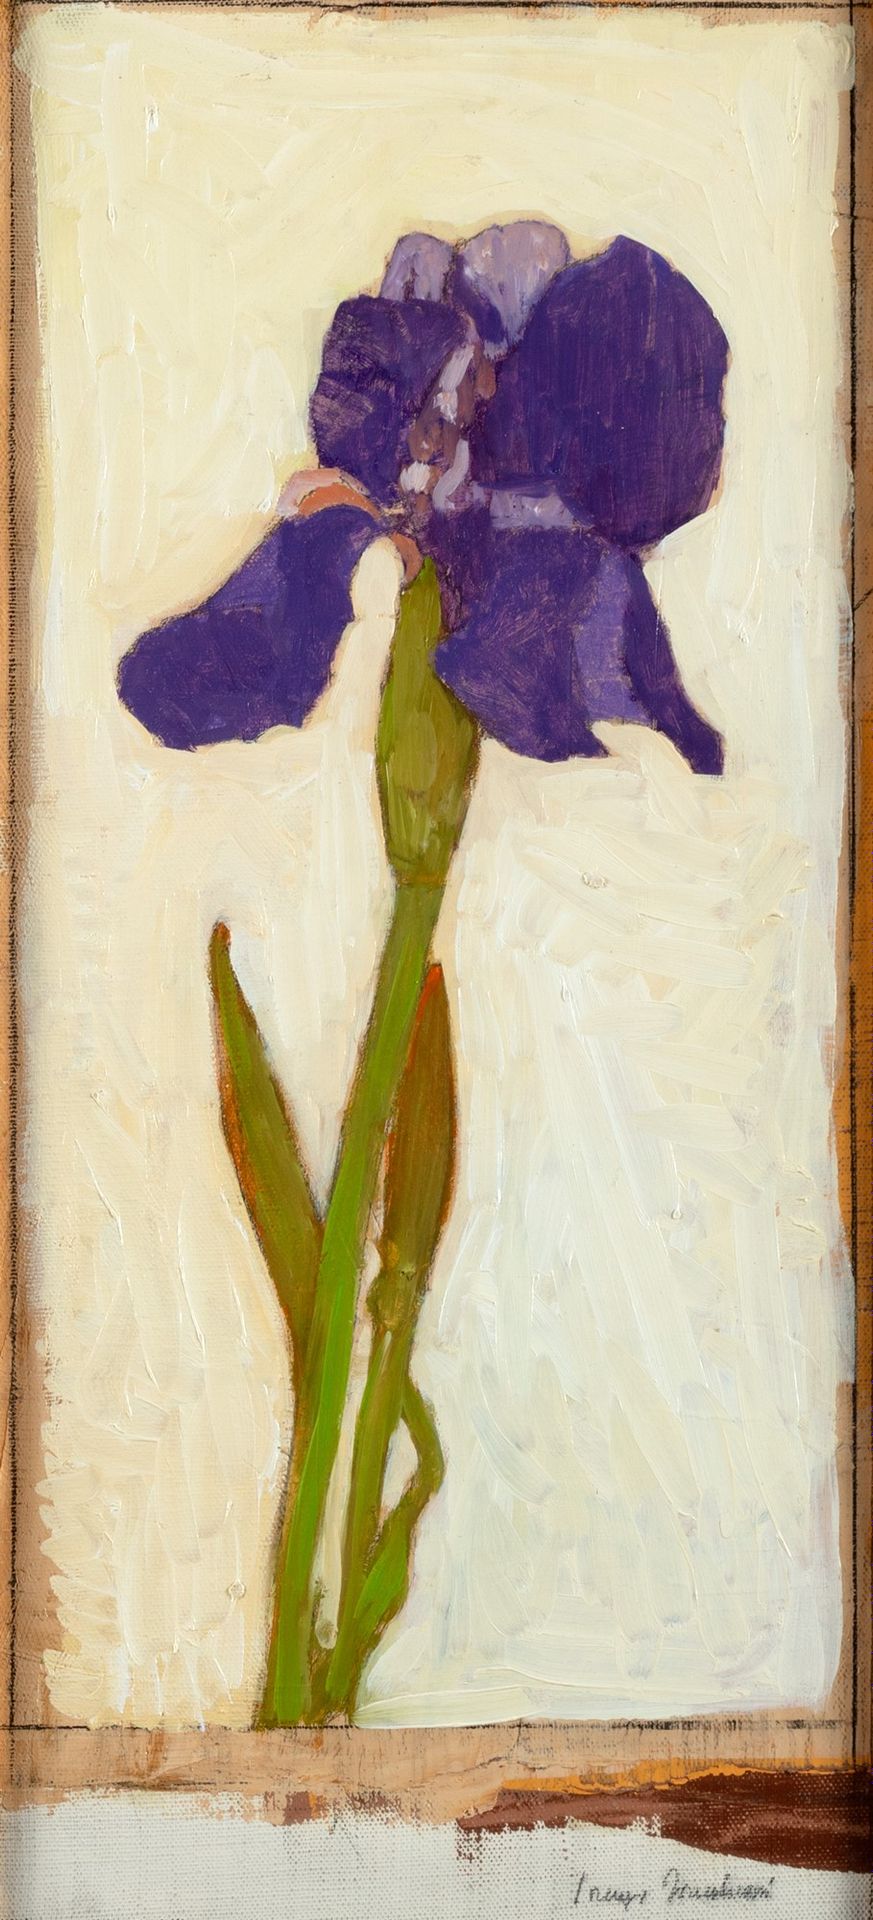 Lorenzo Tornabuoni Iris

óleo sobre lienzo
50 x 24 cm
Firmado abajo a la derecha&hellip;